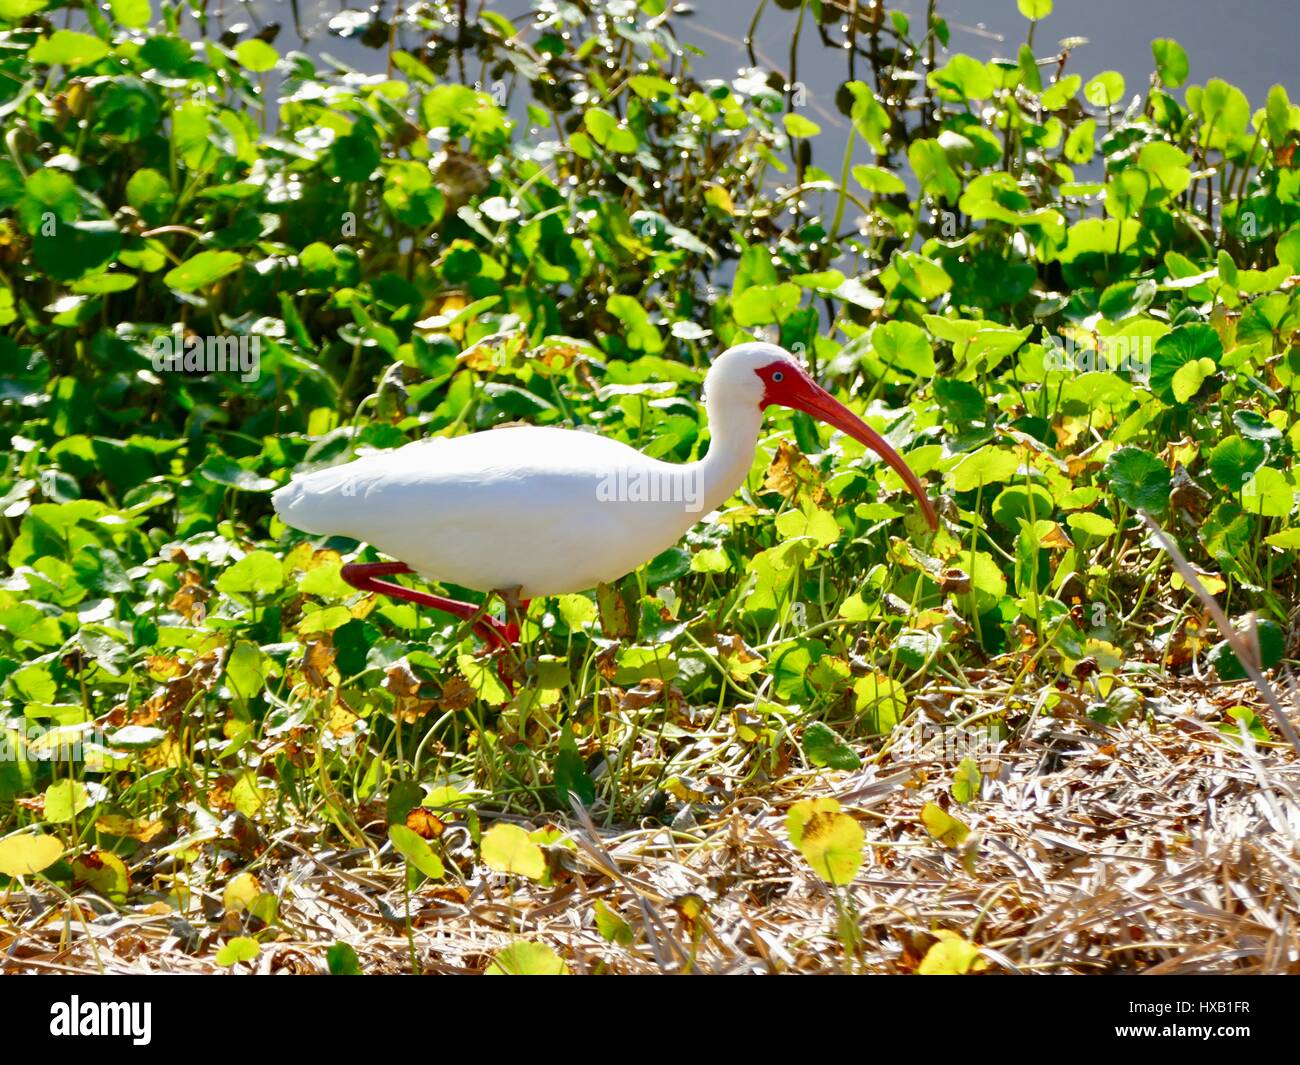 Ibis blanc américain, le bec et les pattes orange, patauger dans des mauvaises herbes le long de lakeshore. Paynes Prairie Preserve State Park, Gainesville, Floride, USA Banque D'Images